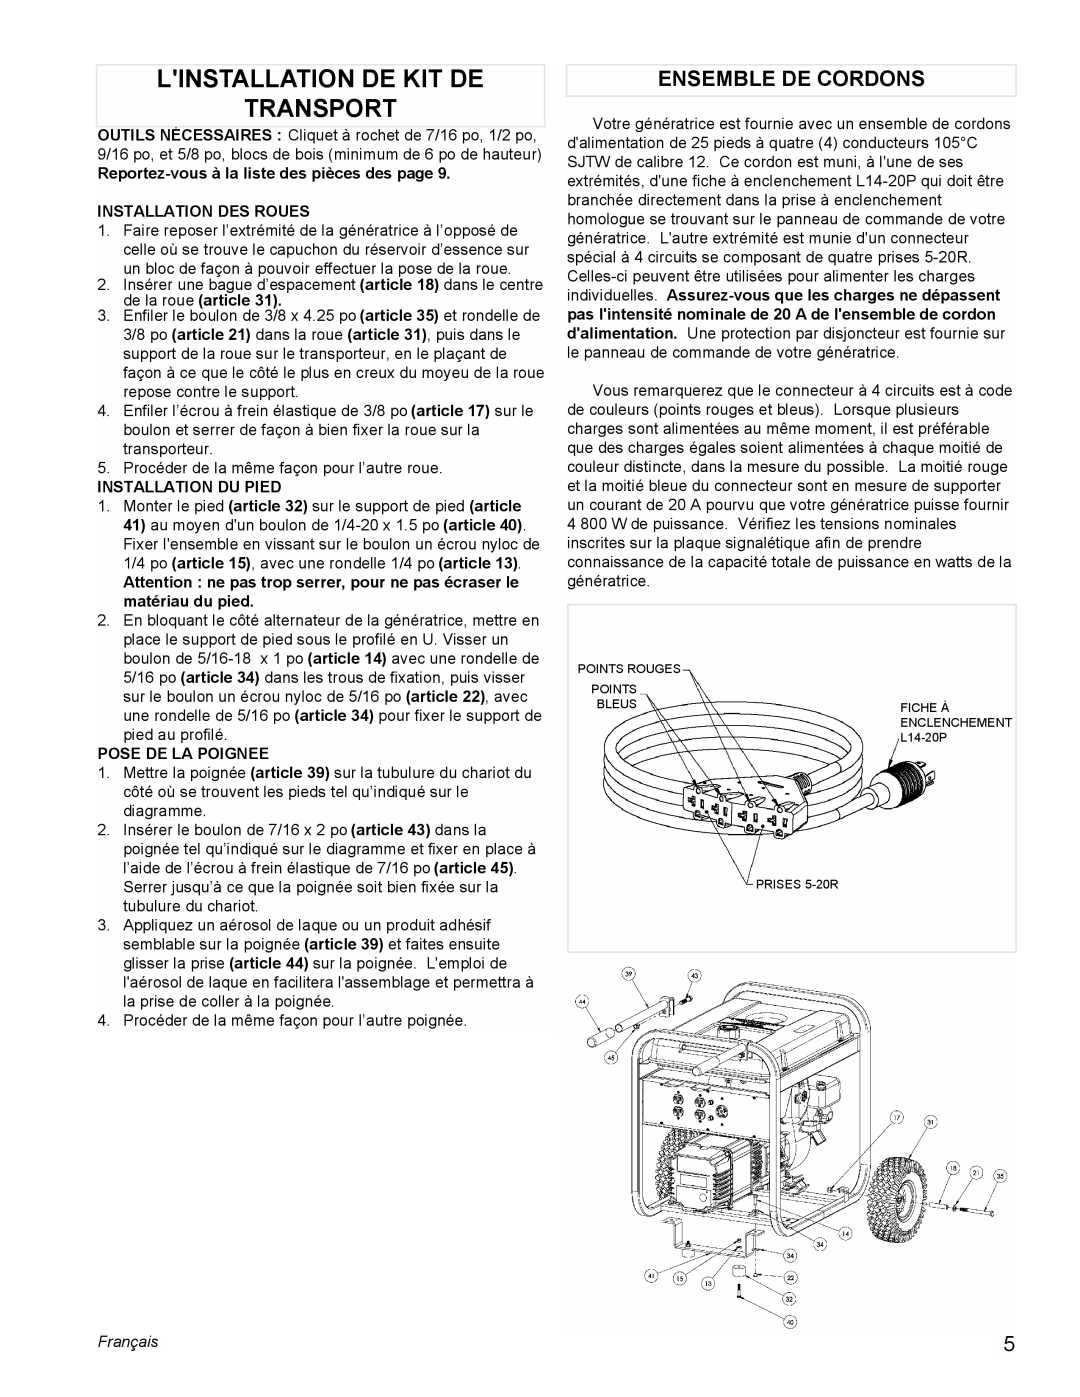 Powermate PL0525501 manual Linstallation De Kit De Transport, Ensemble De Cordons, Français 